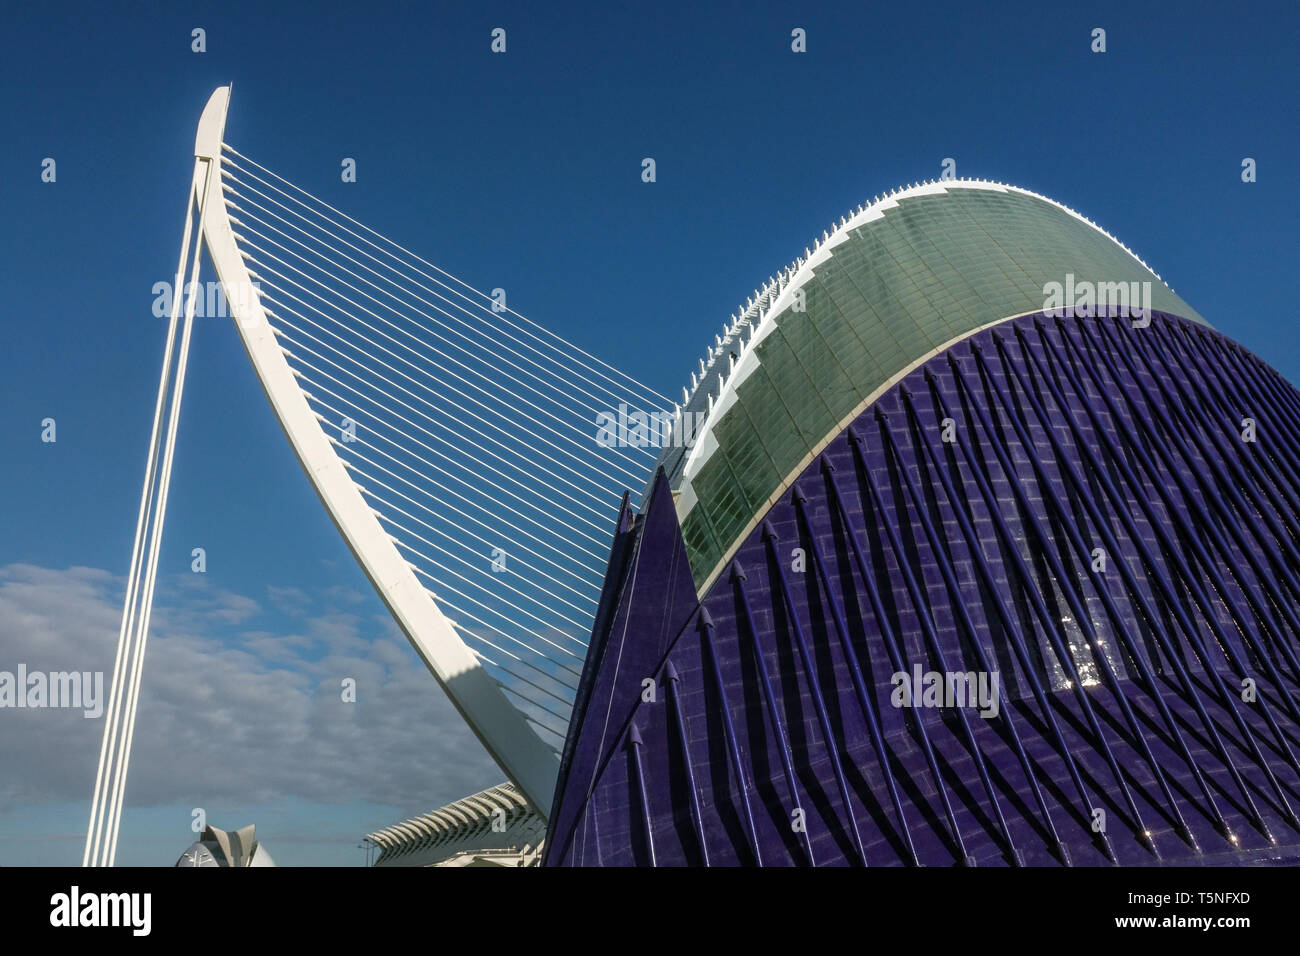 Valencia Spanien Moderne Architektur von Calatrava, zeitgenössische Gebäude Agora, Brücke Puente de l'Assut de l'Or Valencia Stadt der Künste und Wissenschaften Himmel Stockfoto